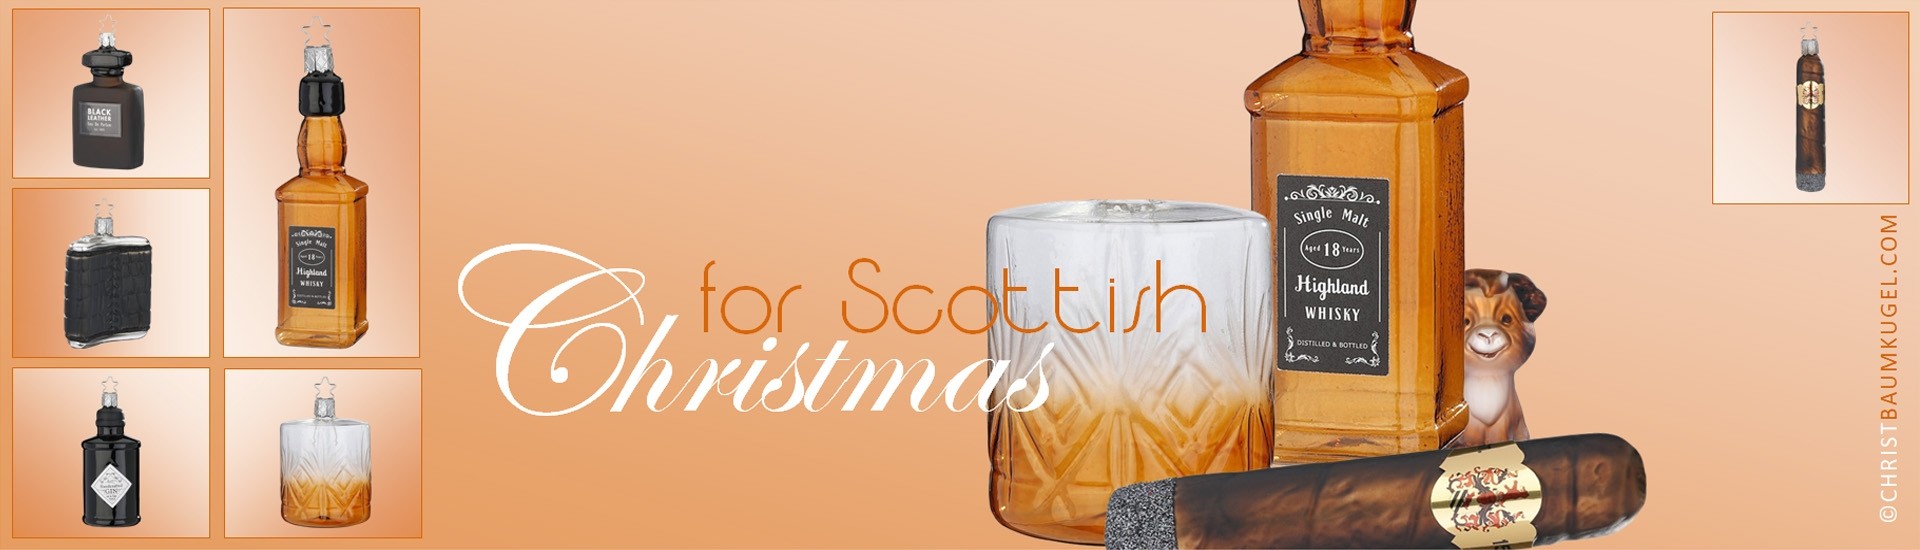 Handgefertigter Glas Christbaumschmuck, Christbaumkugeln, besondere  Weihnachtsdeko und Weihnachtskugeln